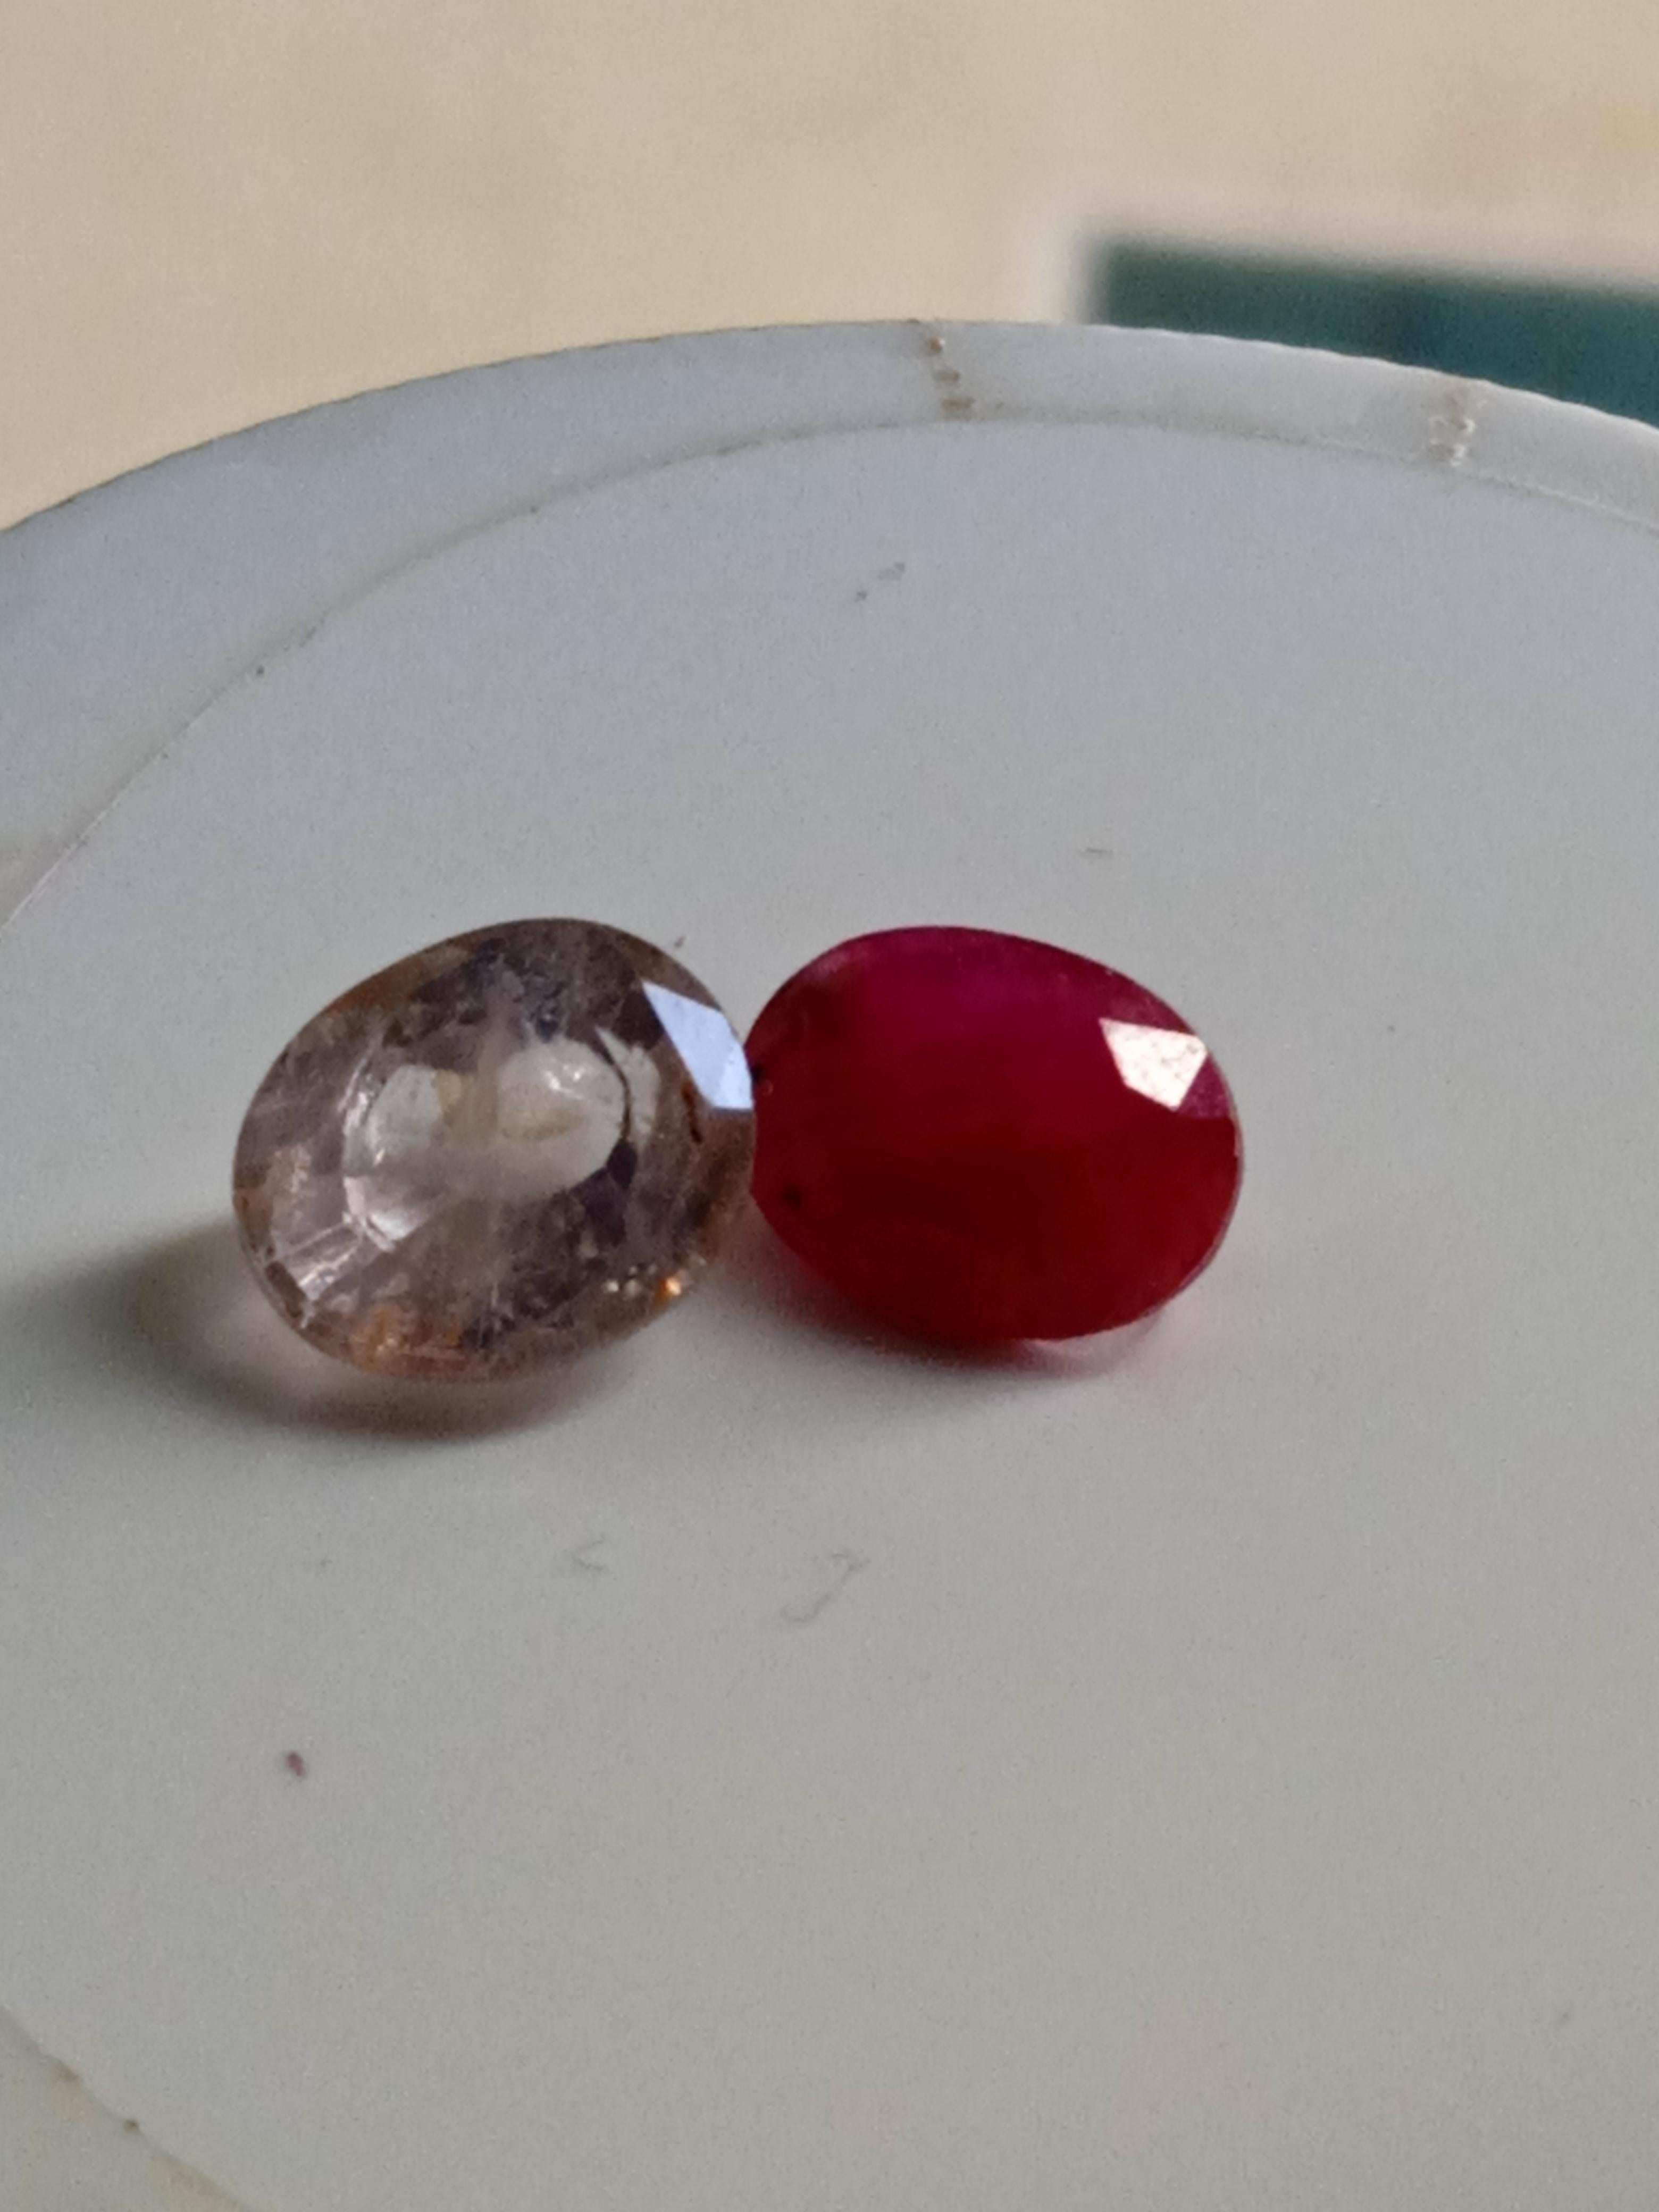 Dieses exquisite Set aus losen Edelsteinen umfasst eine atemberaubende 2-teilige Kollektion aus natürlichen, hellrosa Saphiren und Rubinen. Die ovalen Saphire haben einen exzellenten Schliff und einen herrlichen rosa Farbton, der jedem Schmuckstück